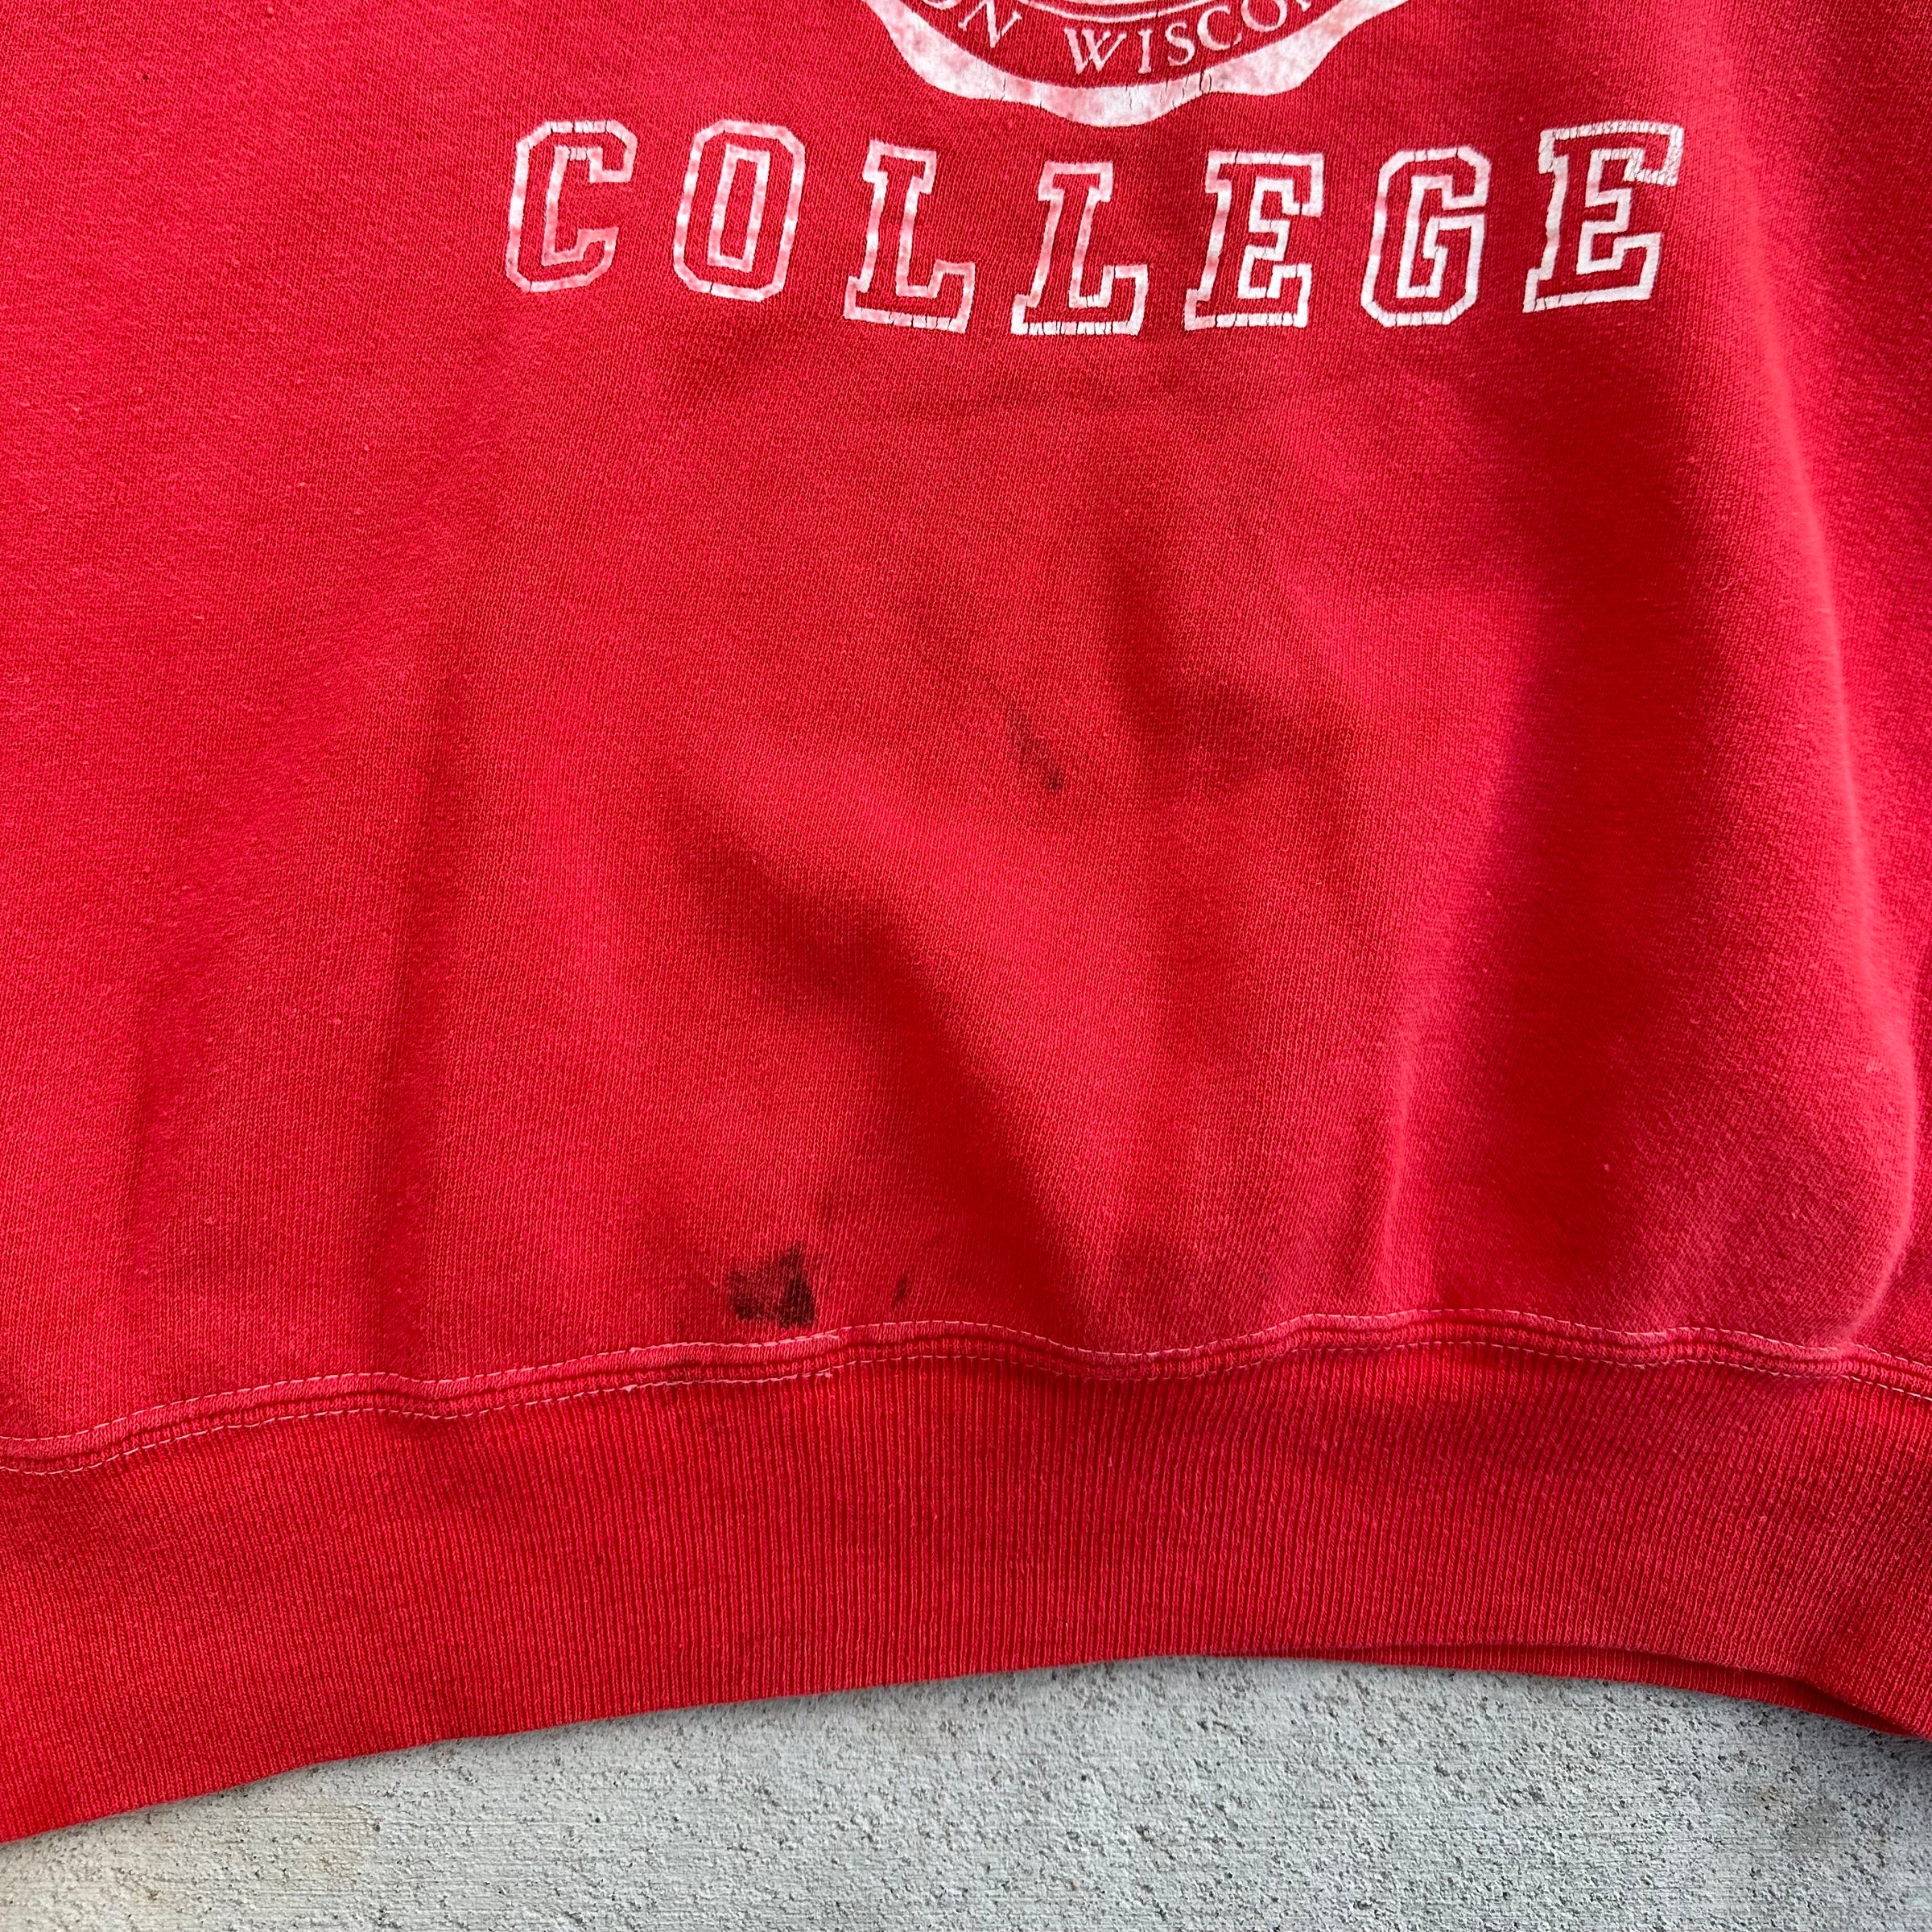 1970’s Ripon College Raglan Crewneck Sweatshirt Large